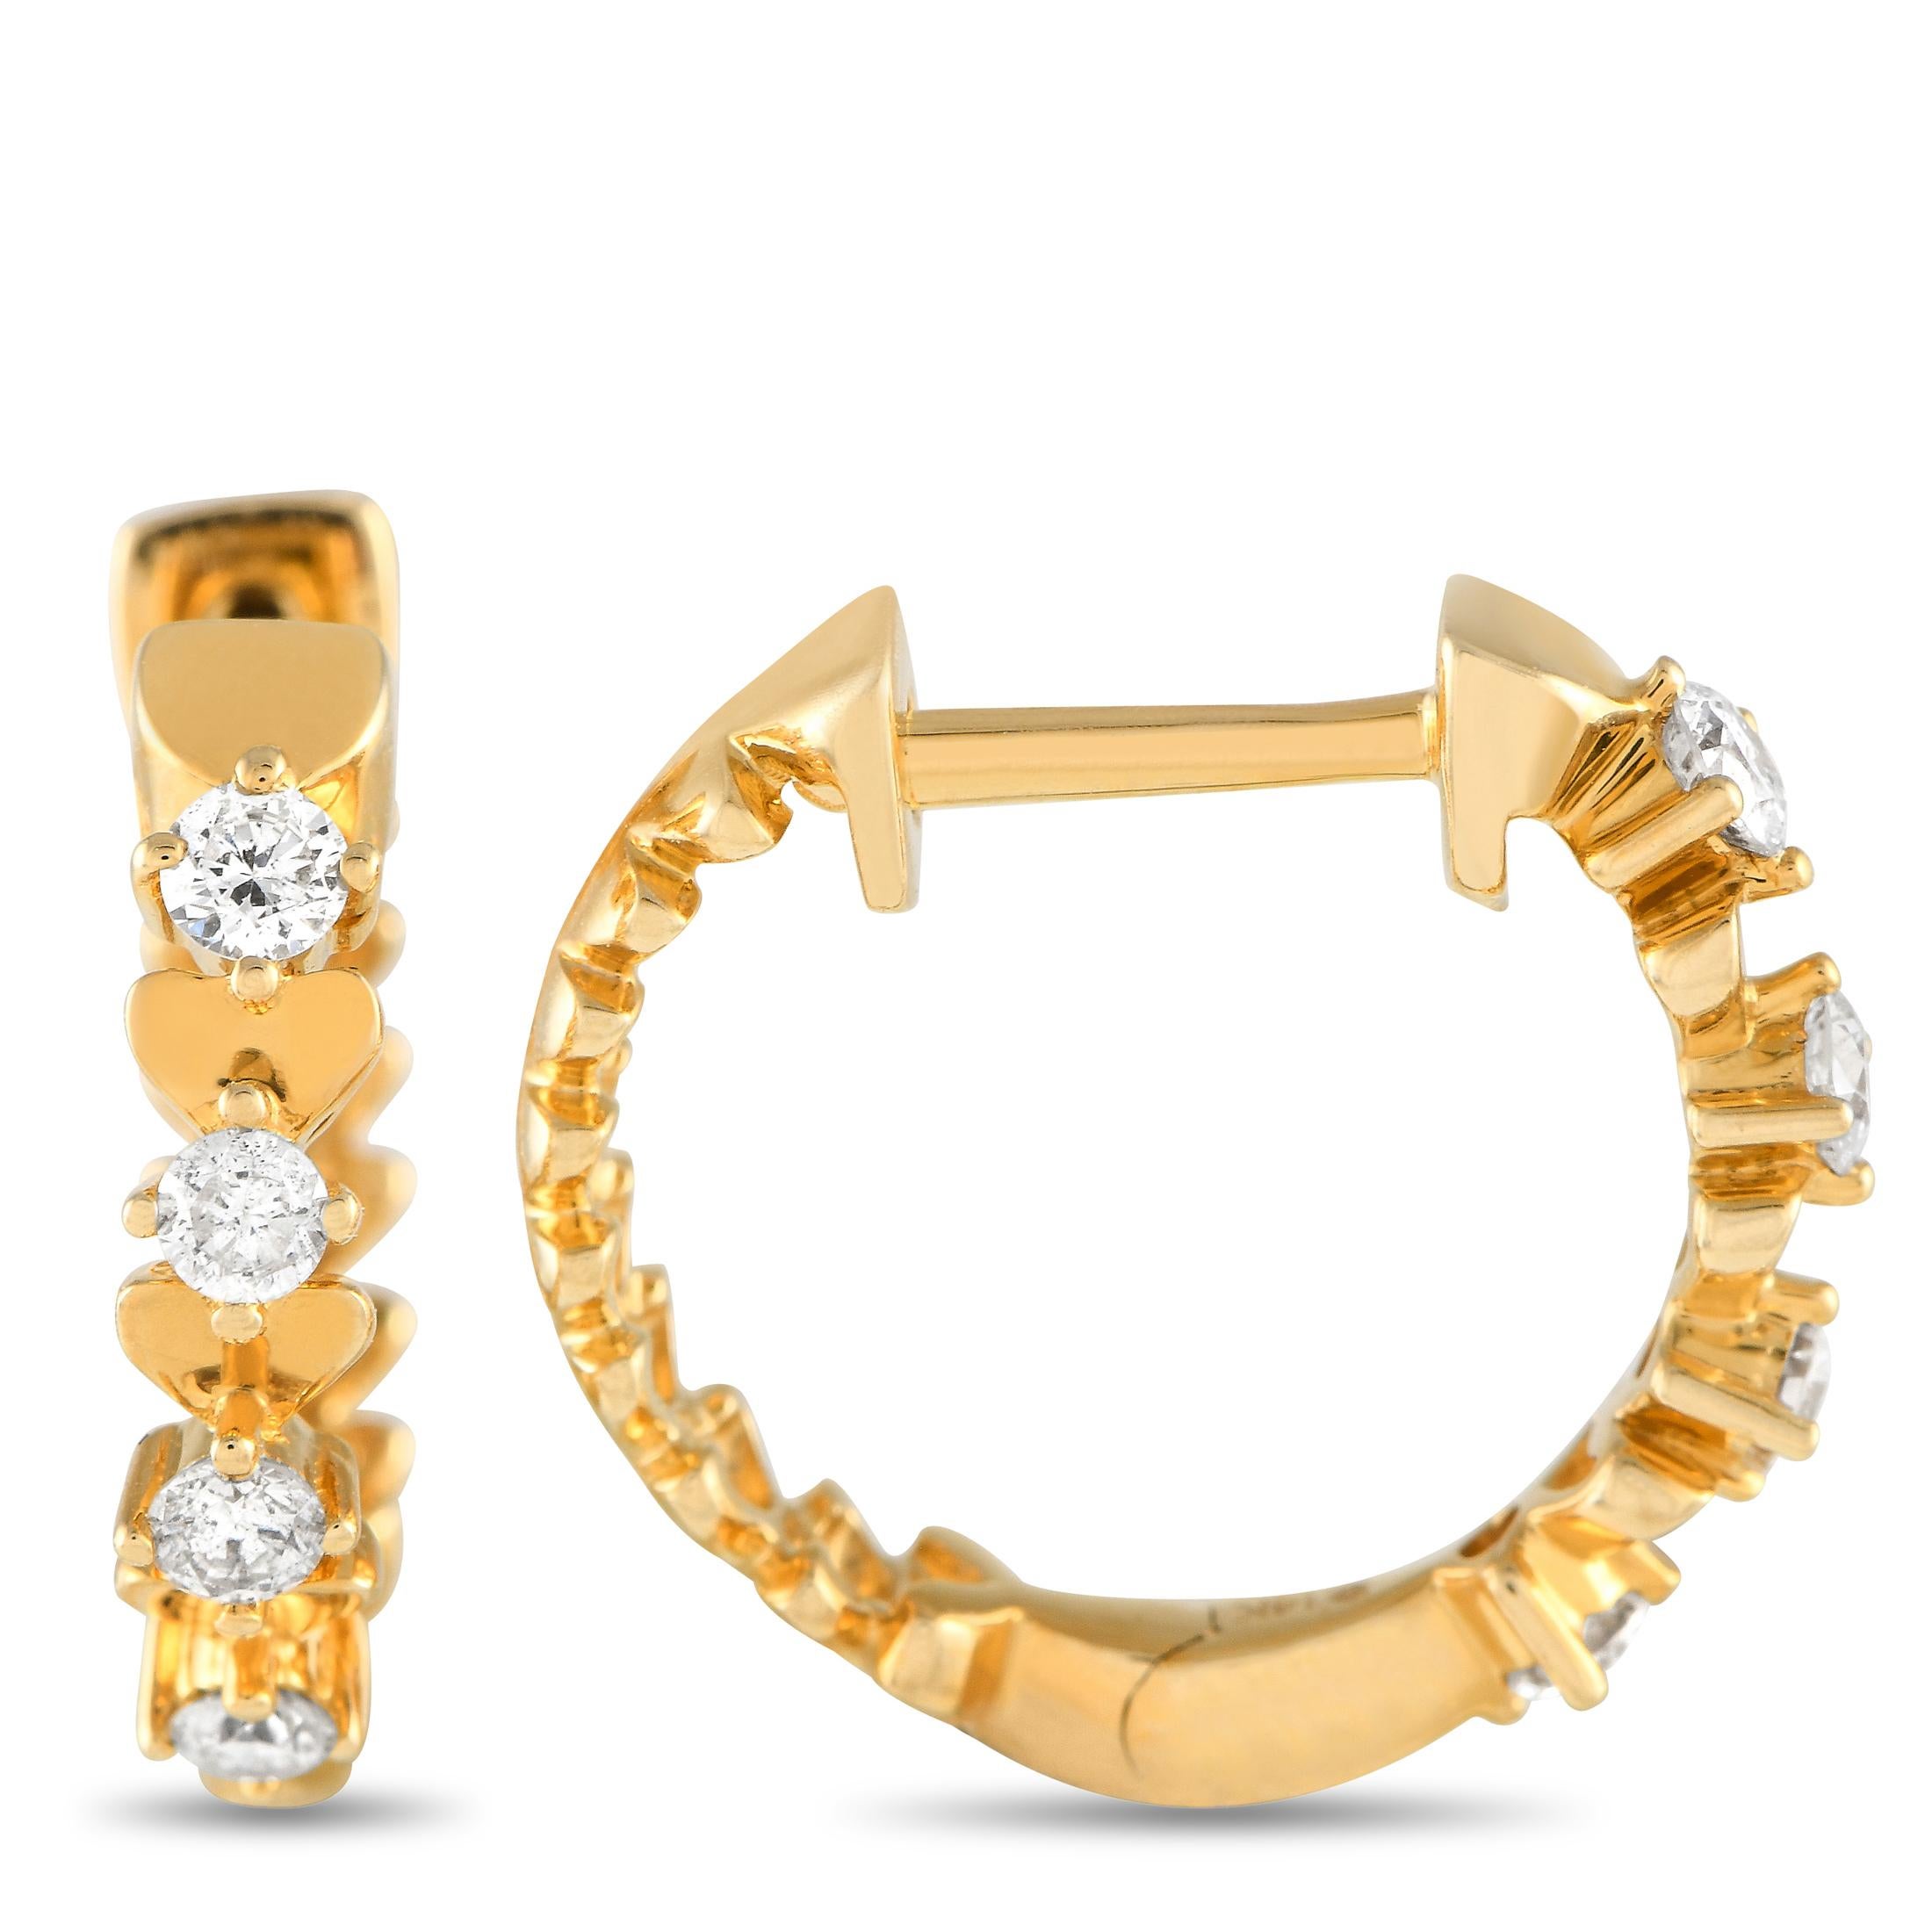 Diamanten mit einem Gesamtgewicht von 0,25 Karat machen diese Creolen einfach unvergesslich. Jeder dieser eleganten Ohrringe verfügt über eine kühne Fassung aus 14K Gelbgold, die 0,65 rund ist und subtile Herzmotive aufweist.
